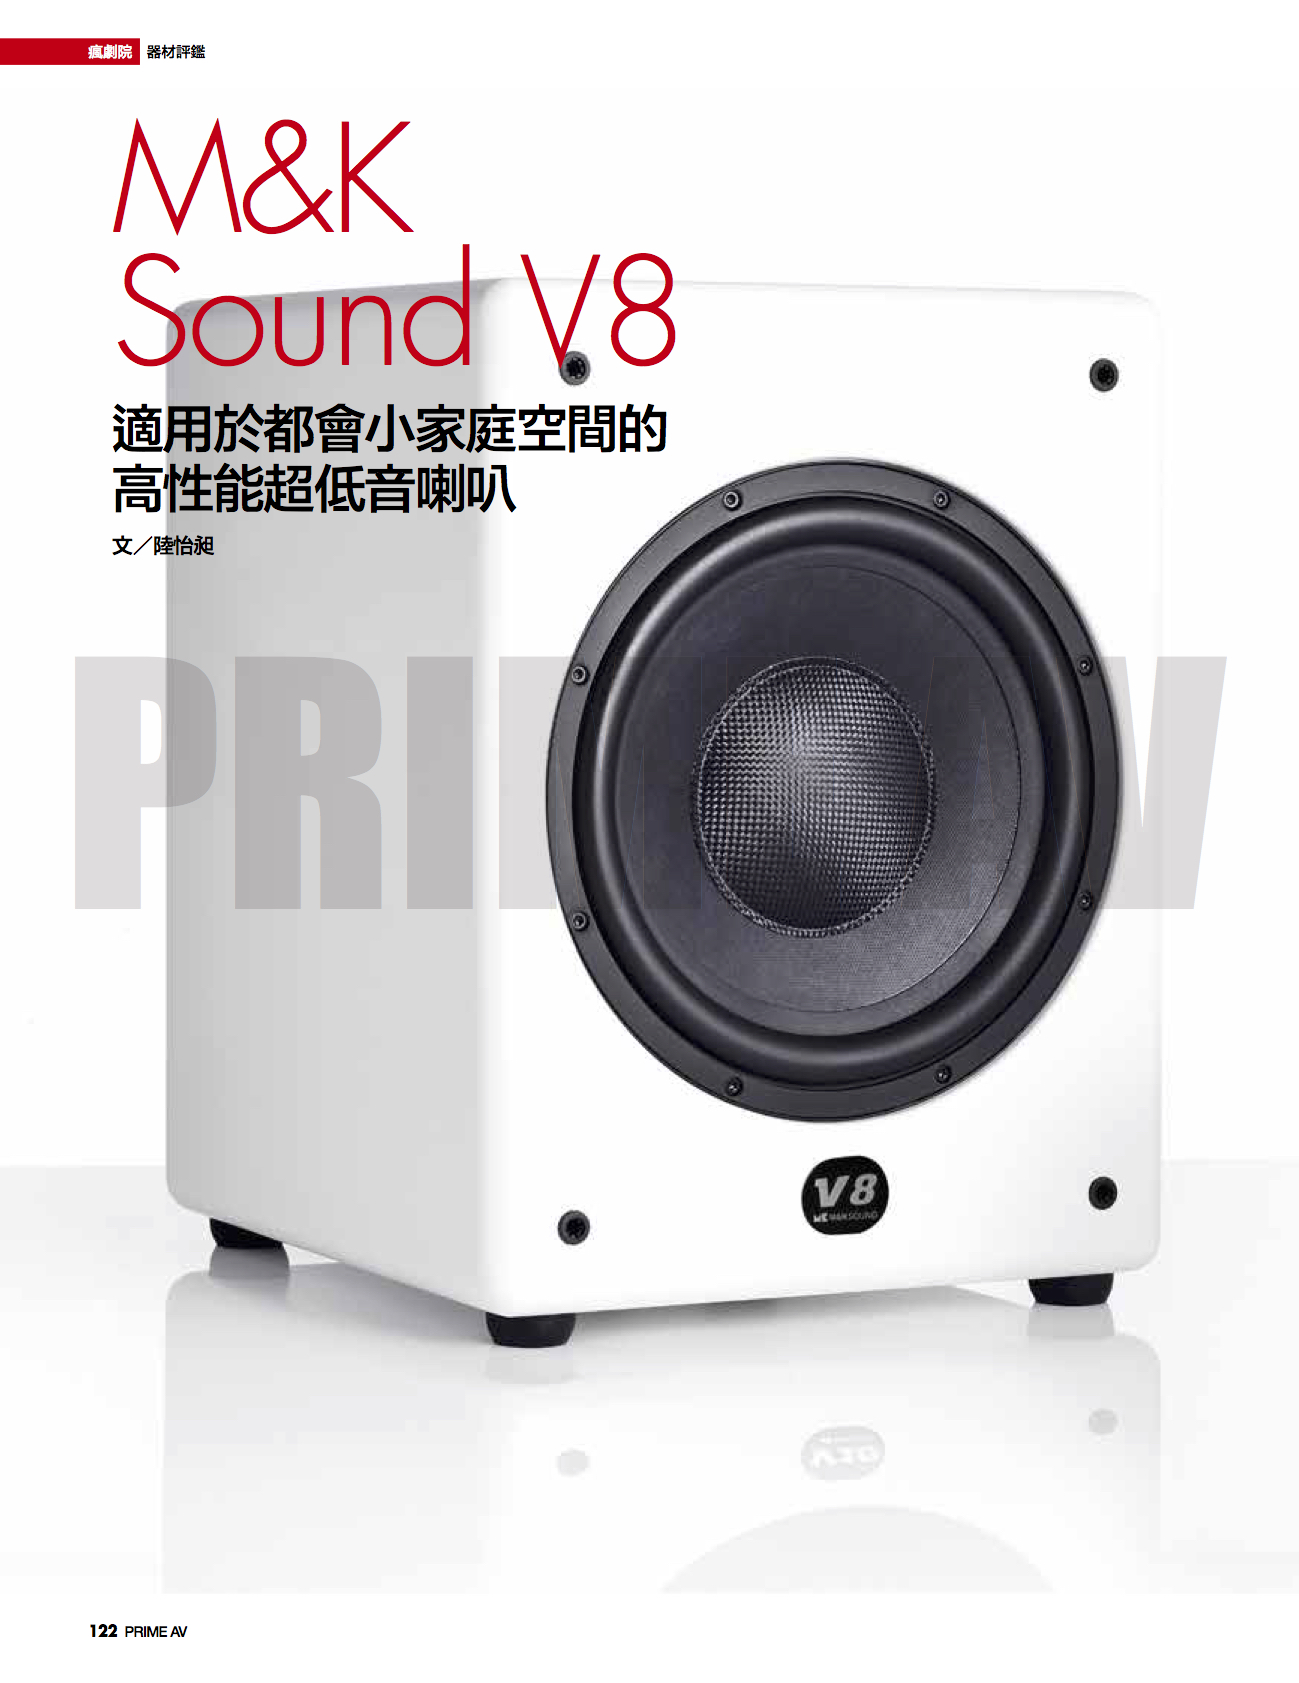 M&K Sound V8 都會小家庭空間的高性能超低音喇叭